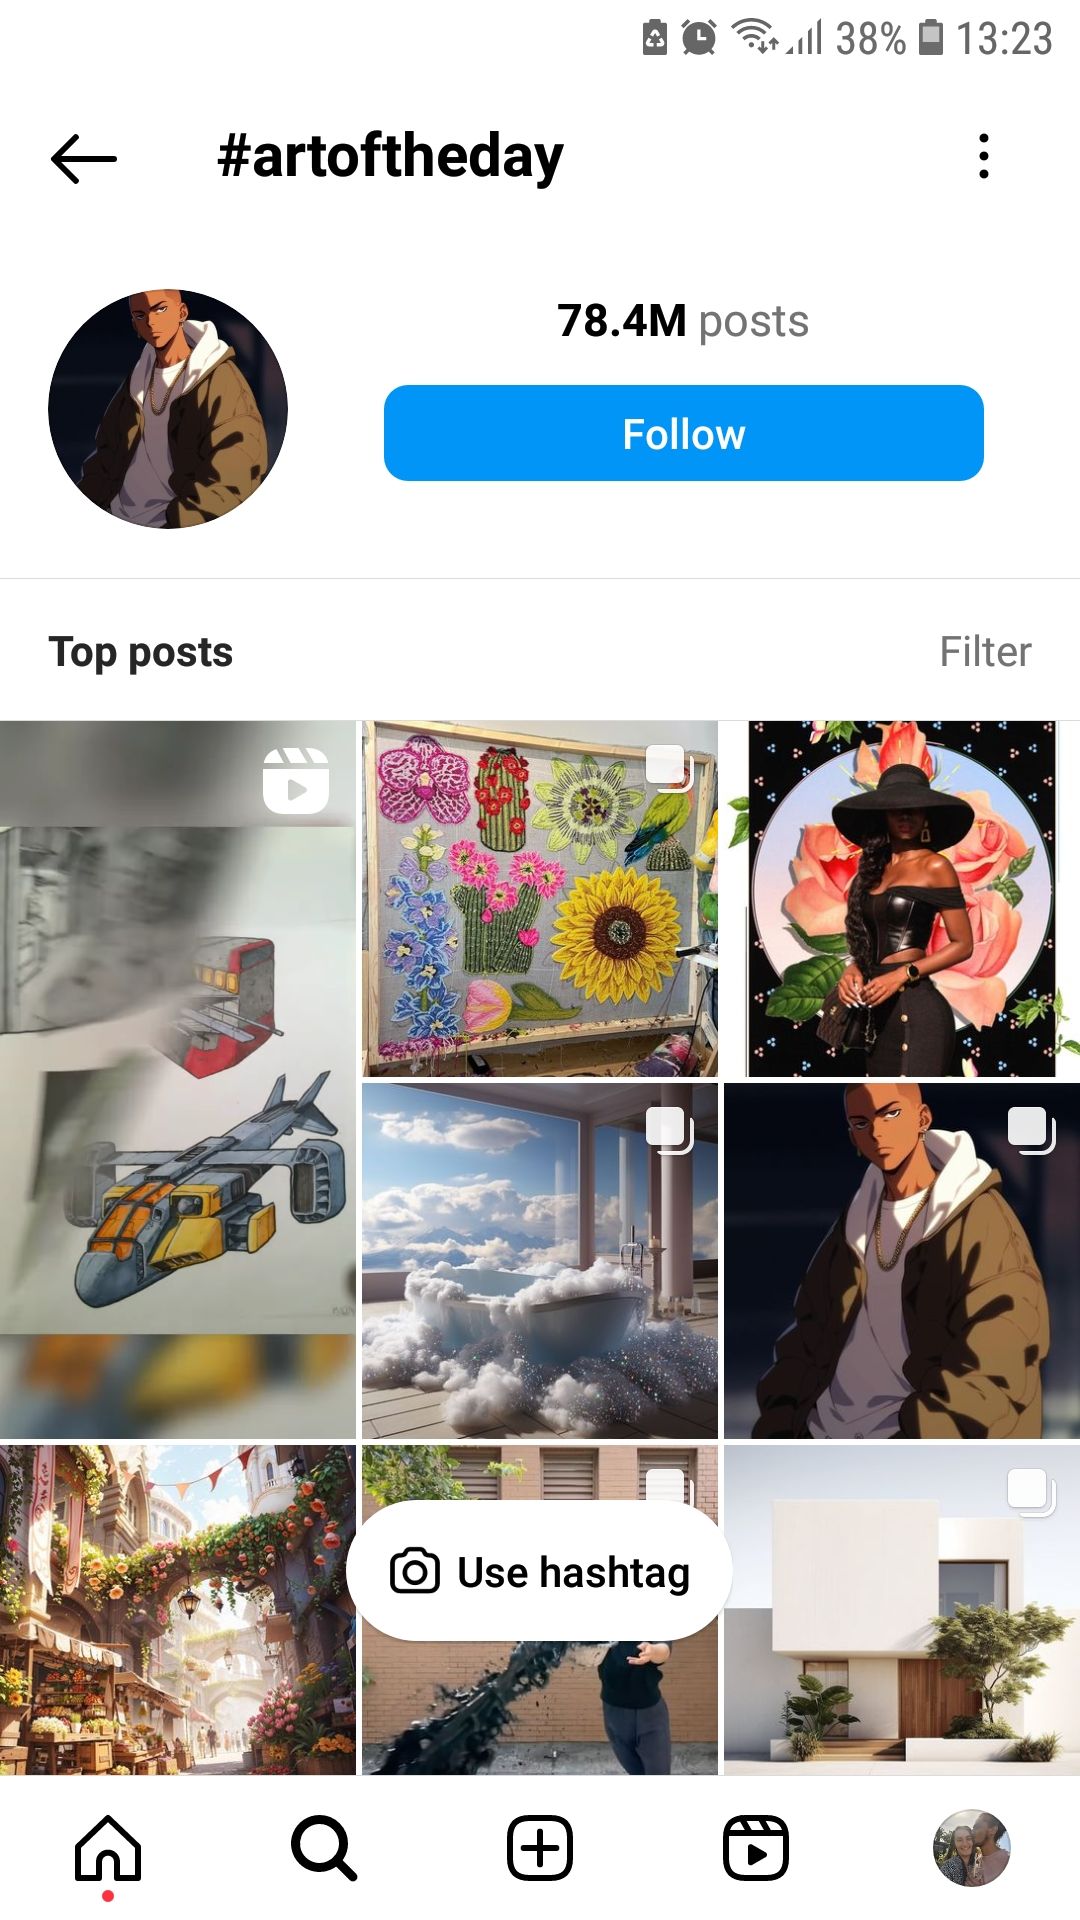 Instagram social media platform artoftheday